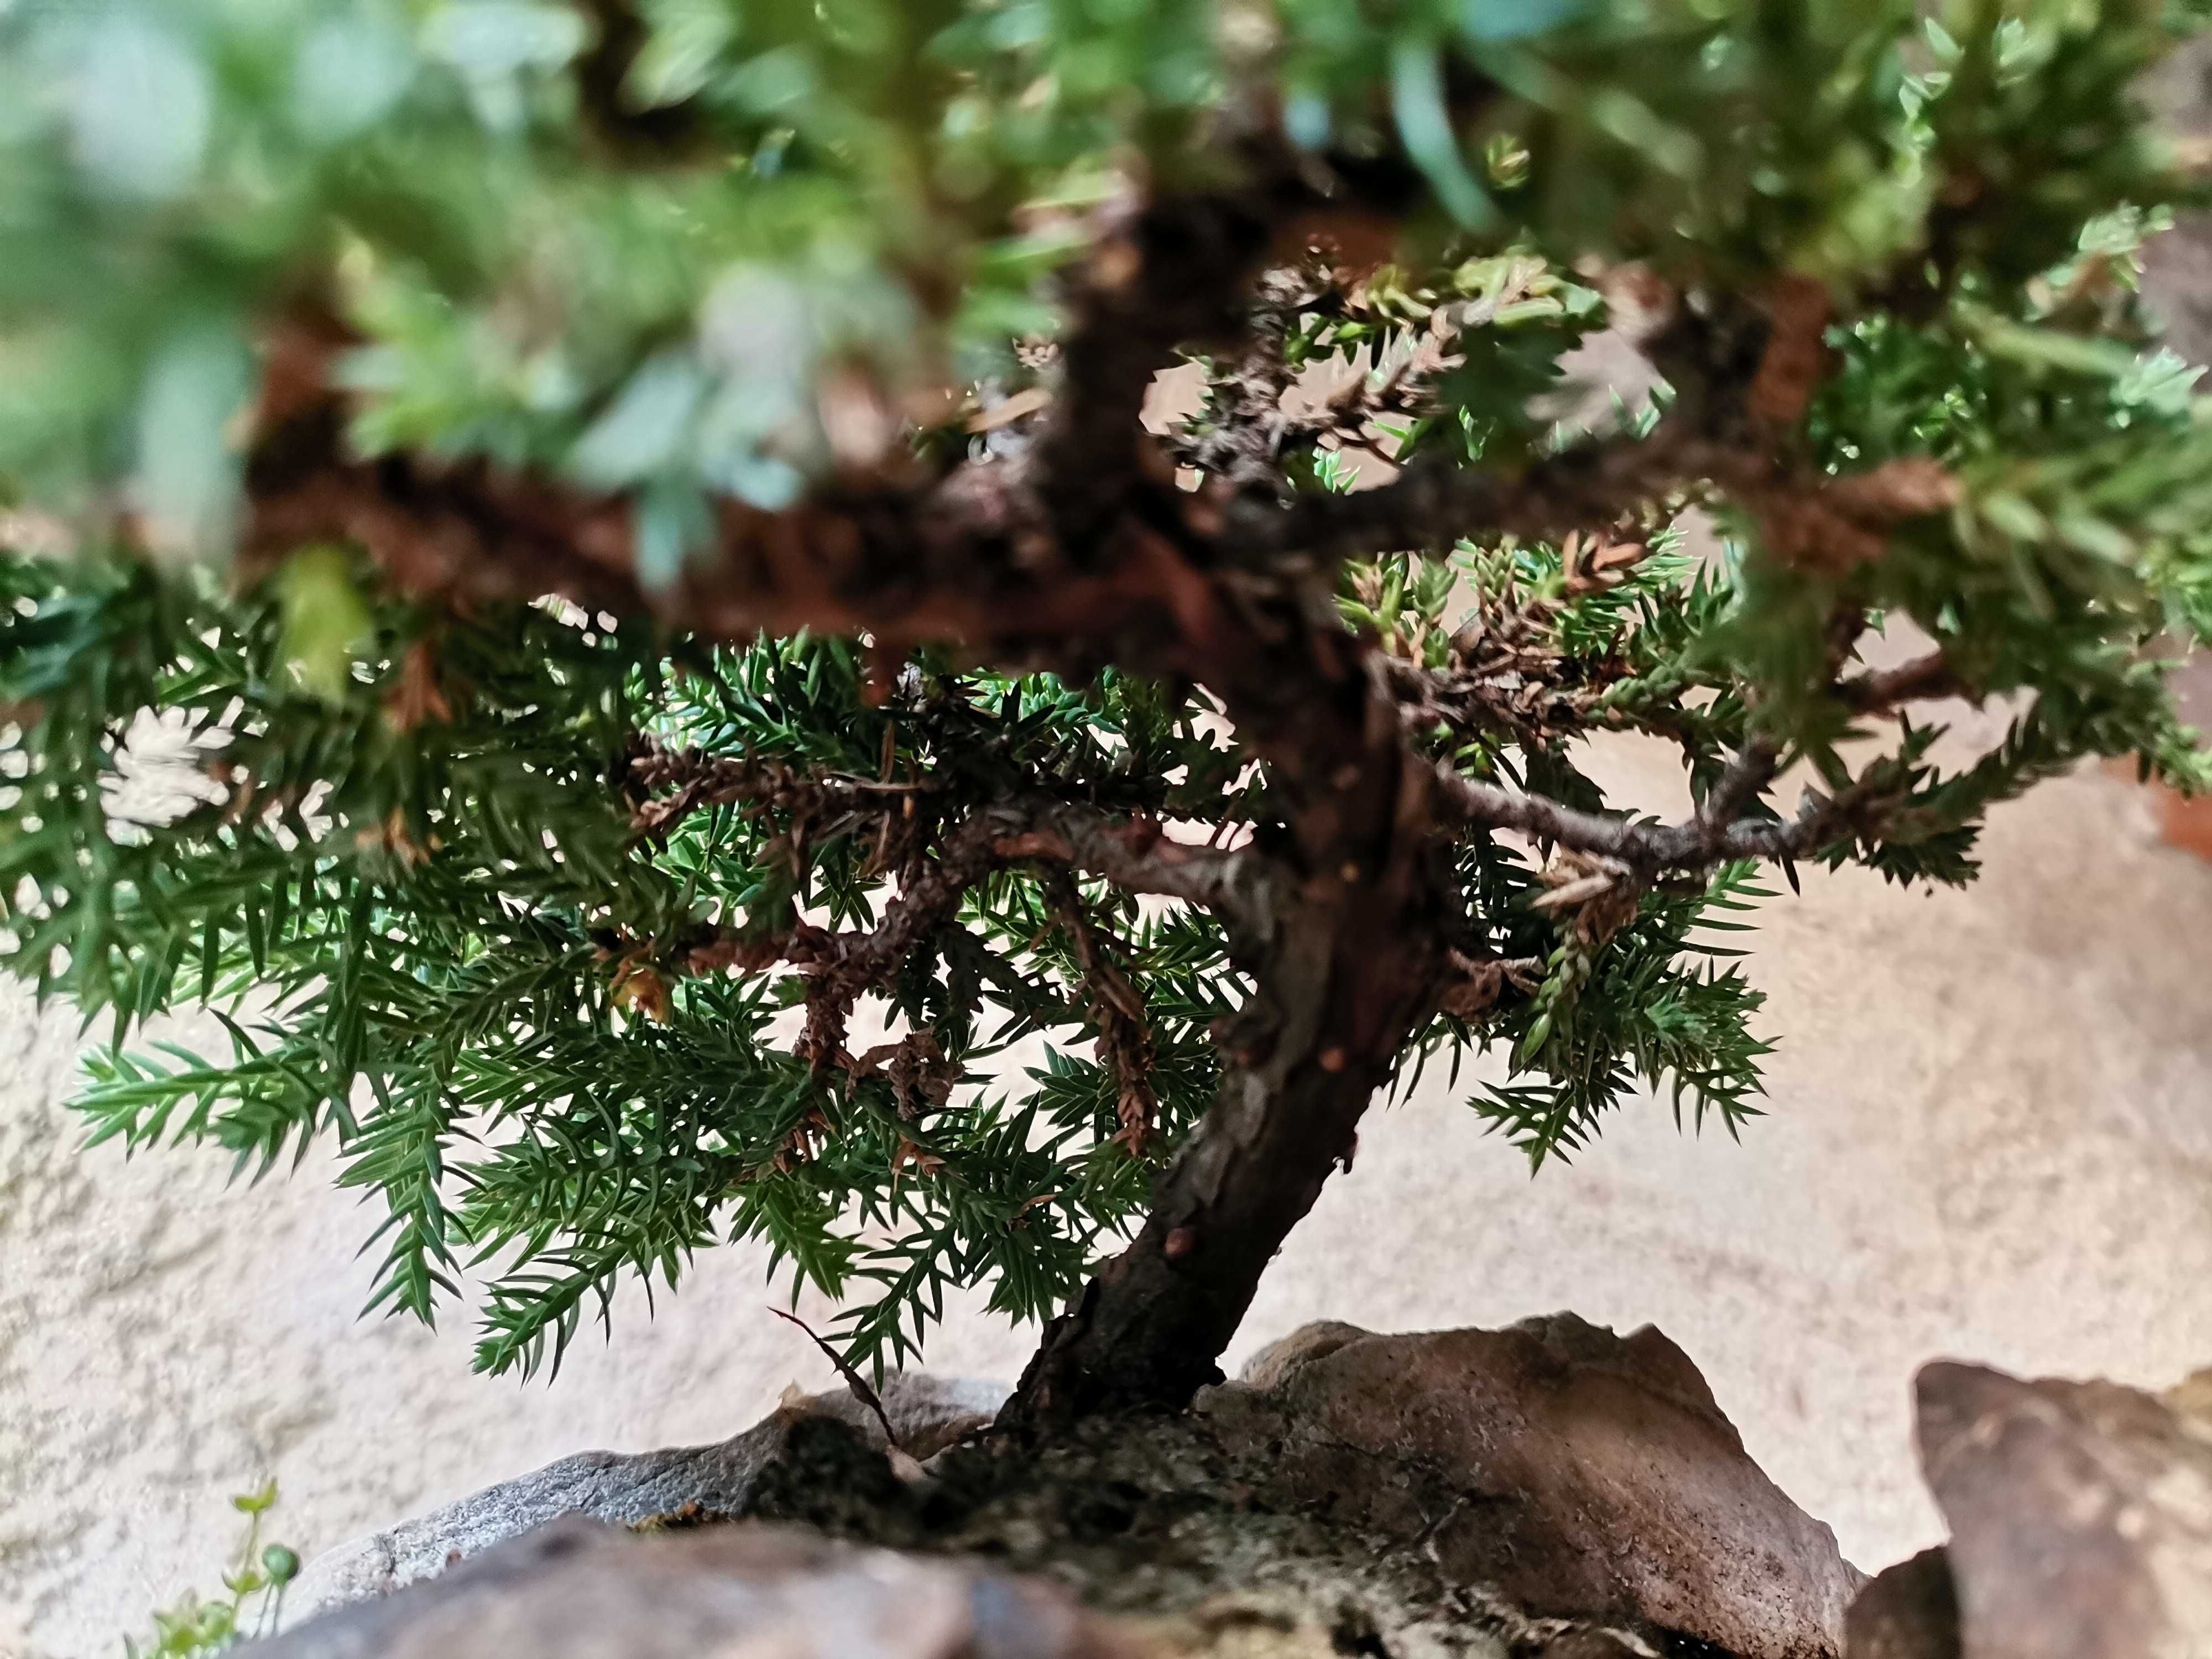 Bonsai em Rochas de "Juniperus P. Nana" - *VENDA URGENTE (DESOCUPAR)*